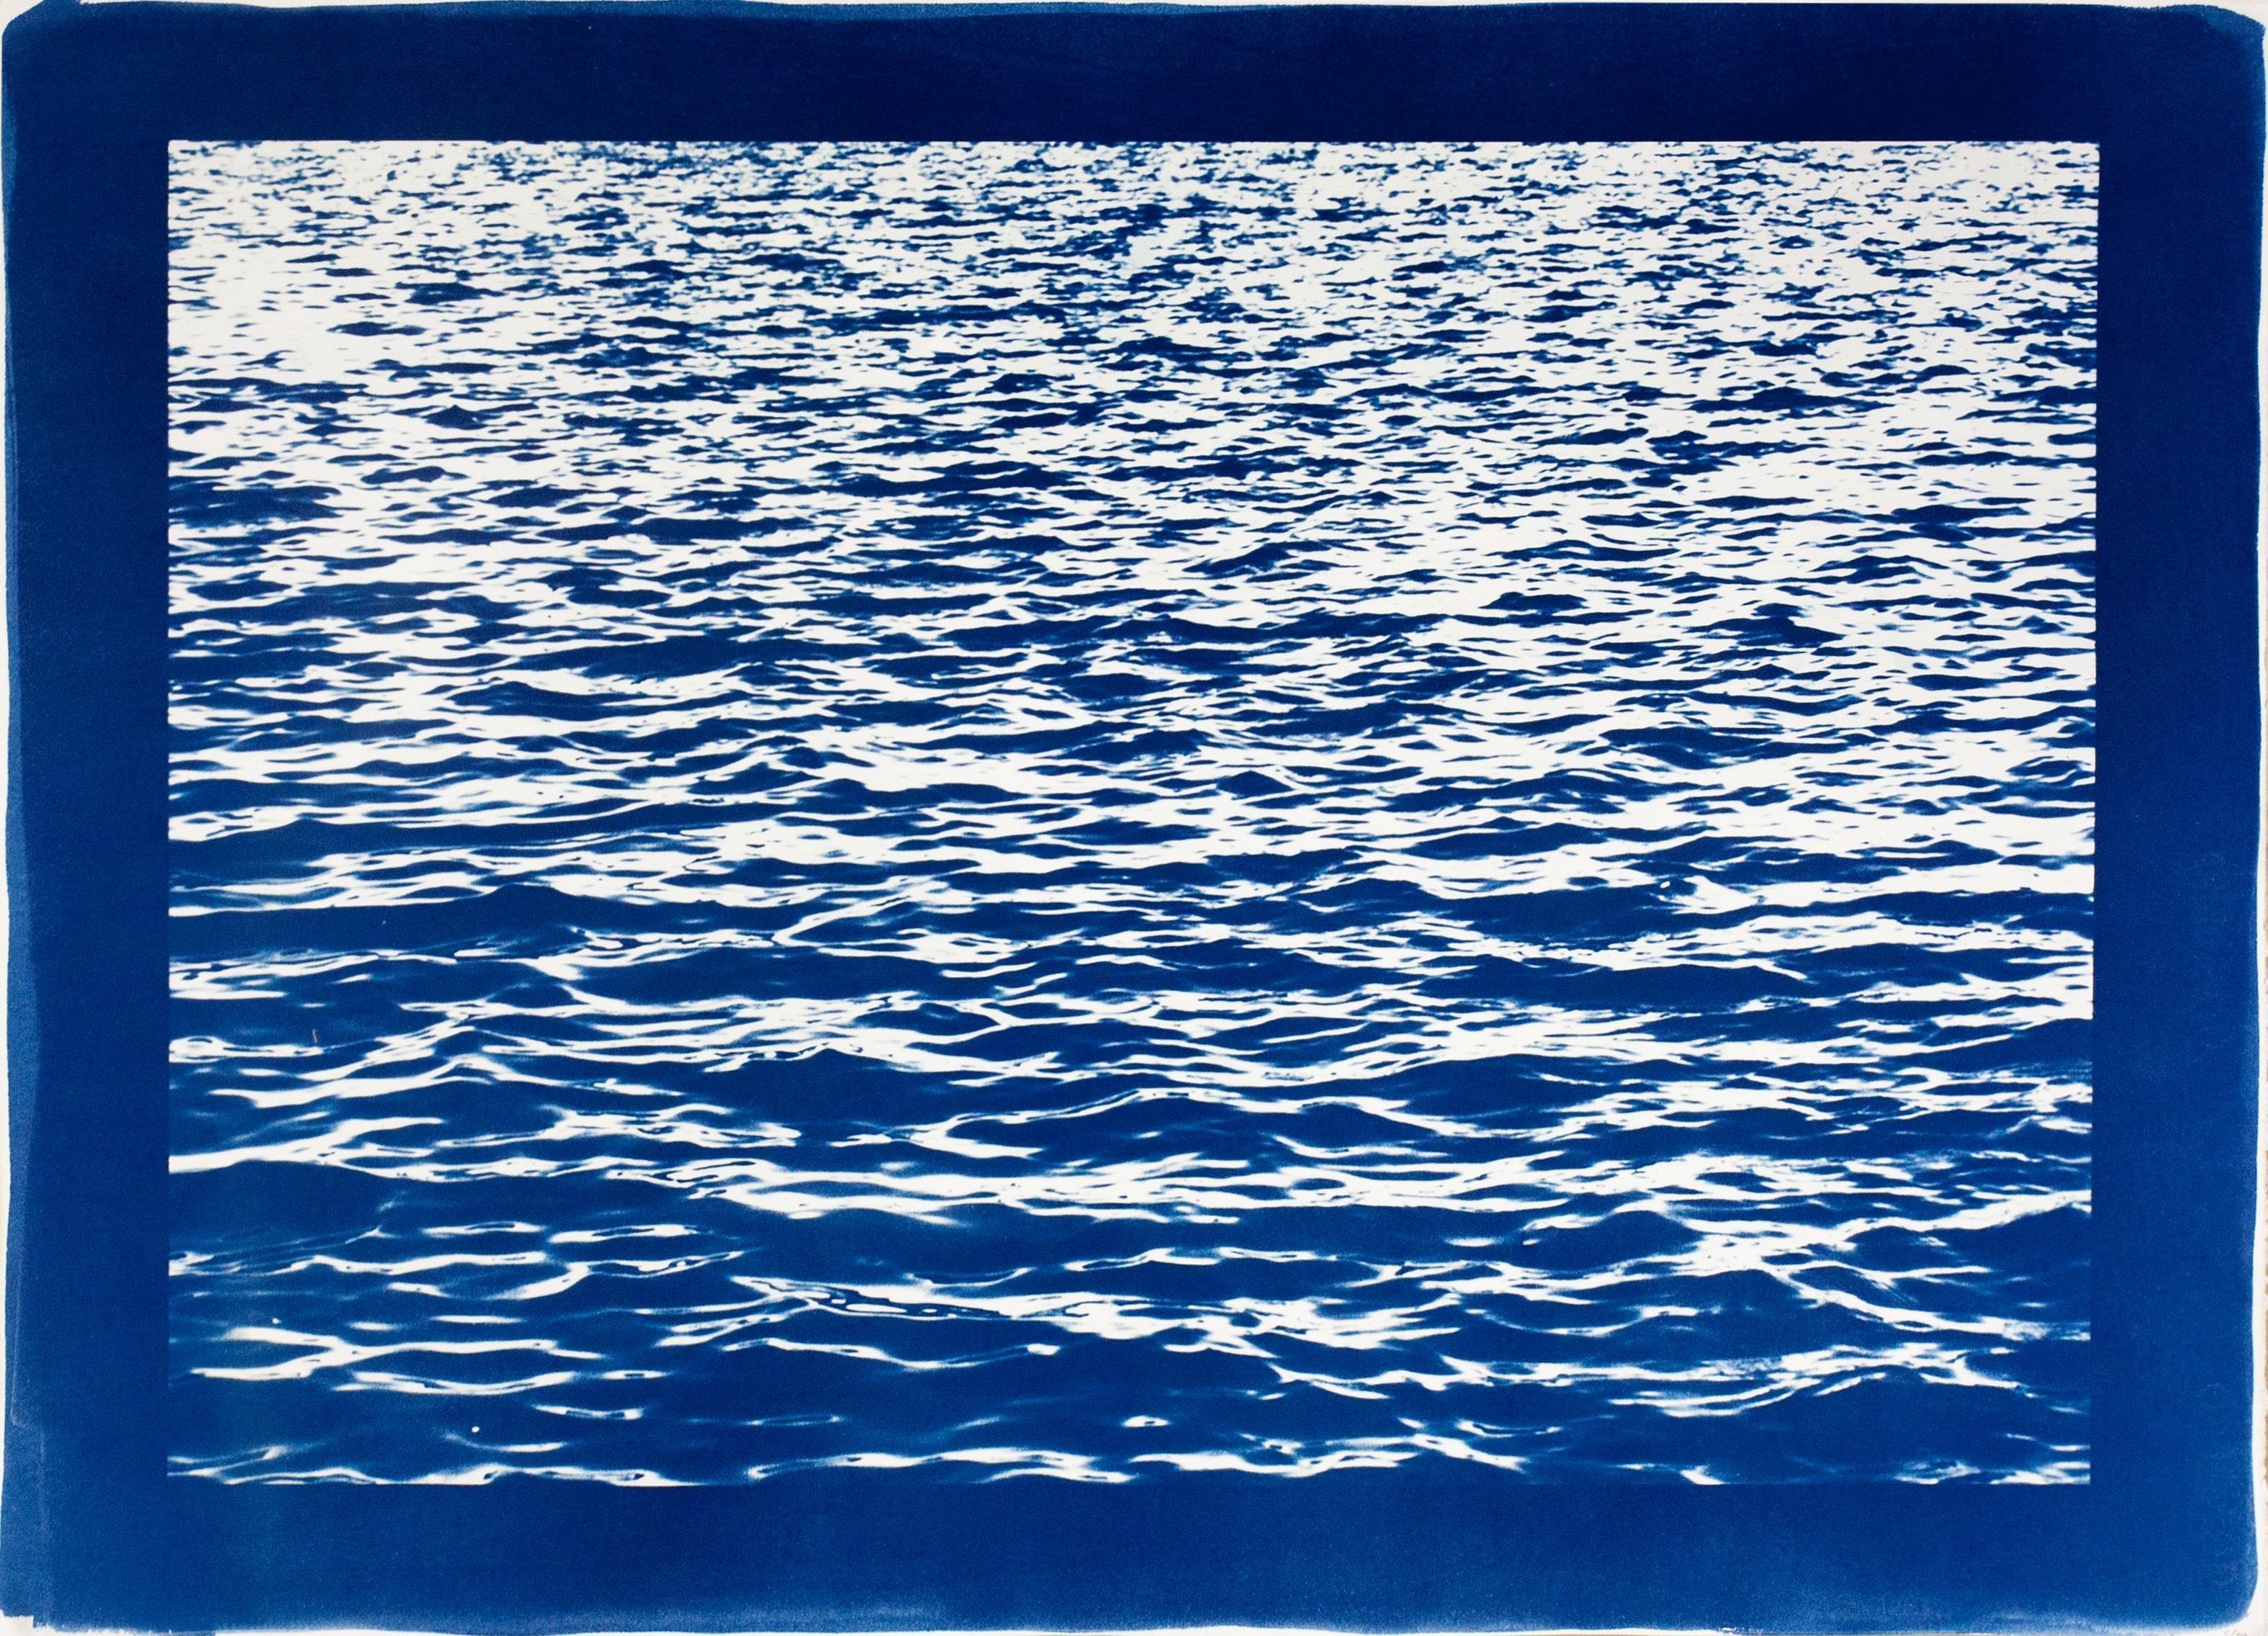 Mediterranean Blue Sea Waves, Handmade Cyanotype Print, Calming Ripples, Limited